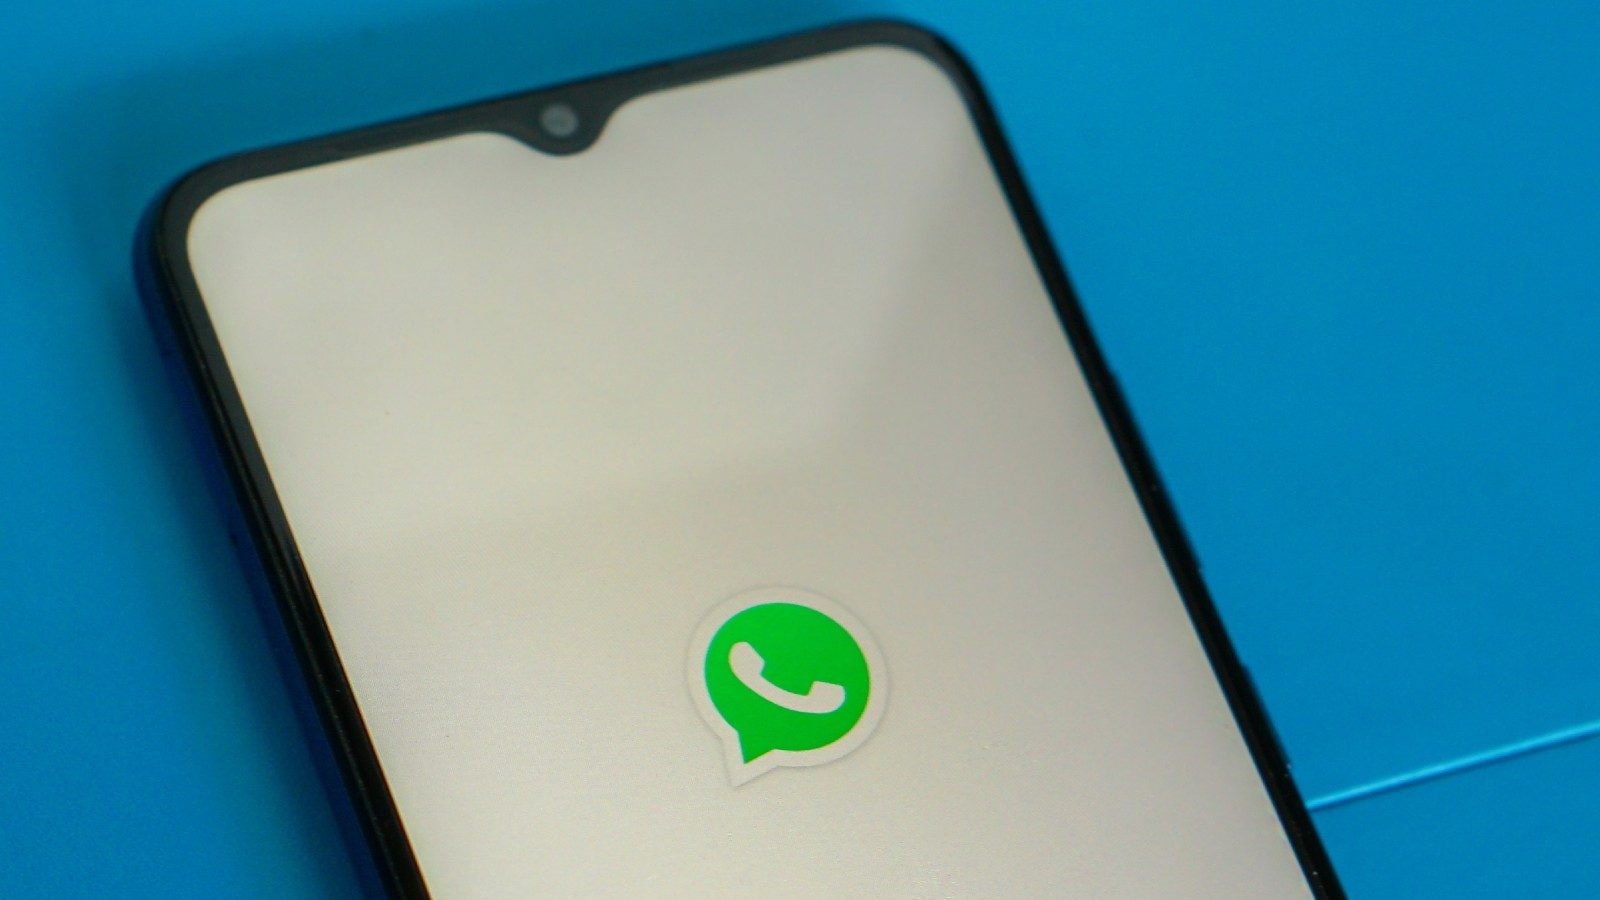 Nueva herramienta de desenfoque de imagen de WhatsApp le permite ocultar datos confidenciales: informe